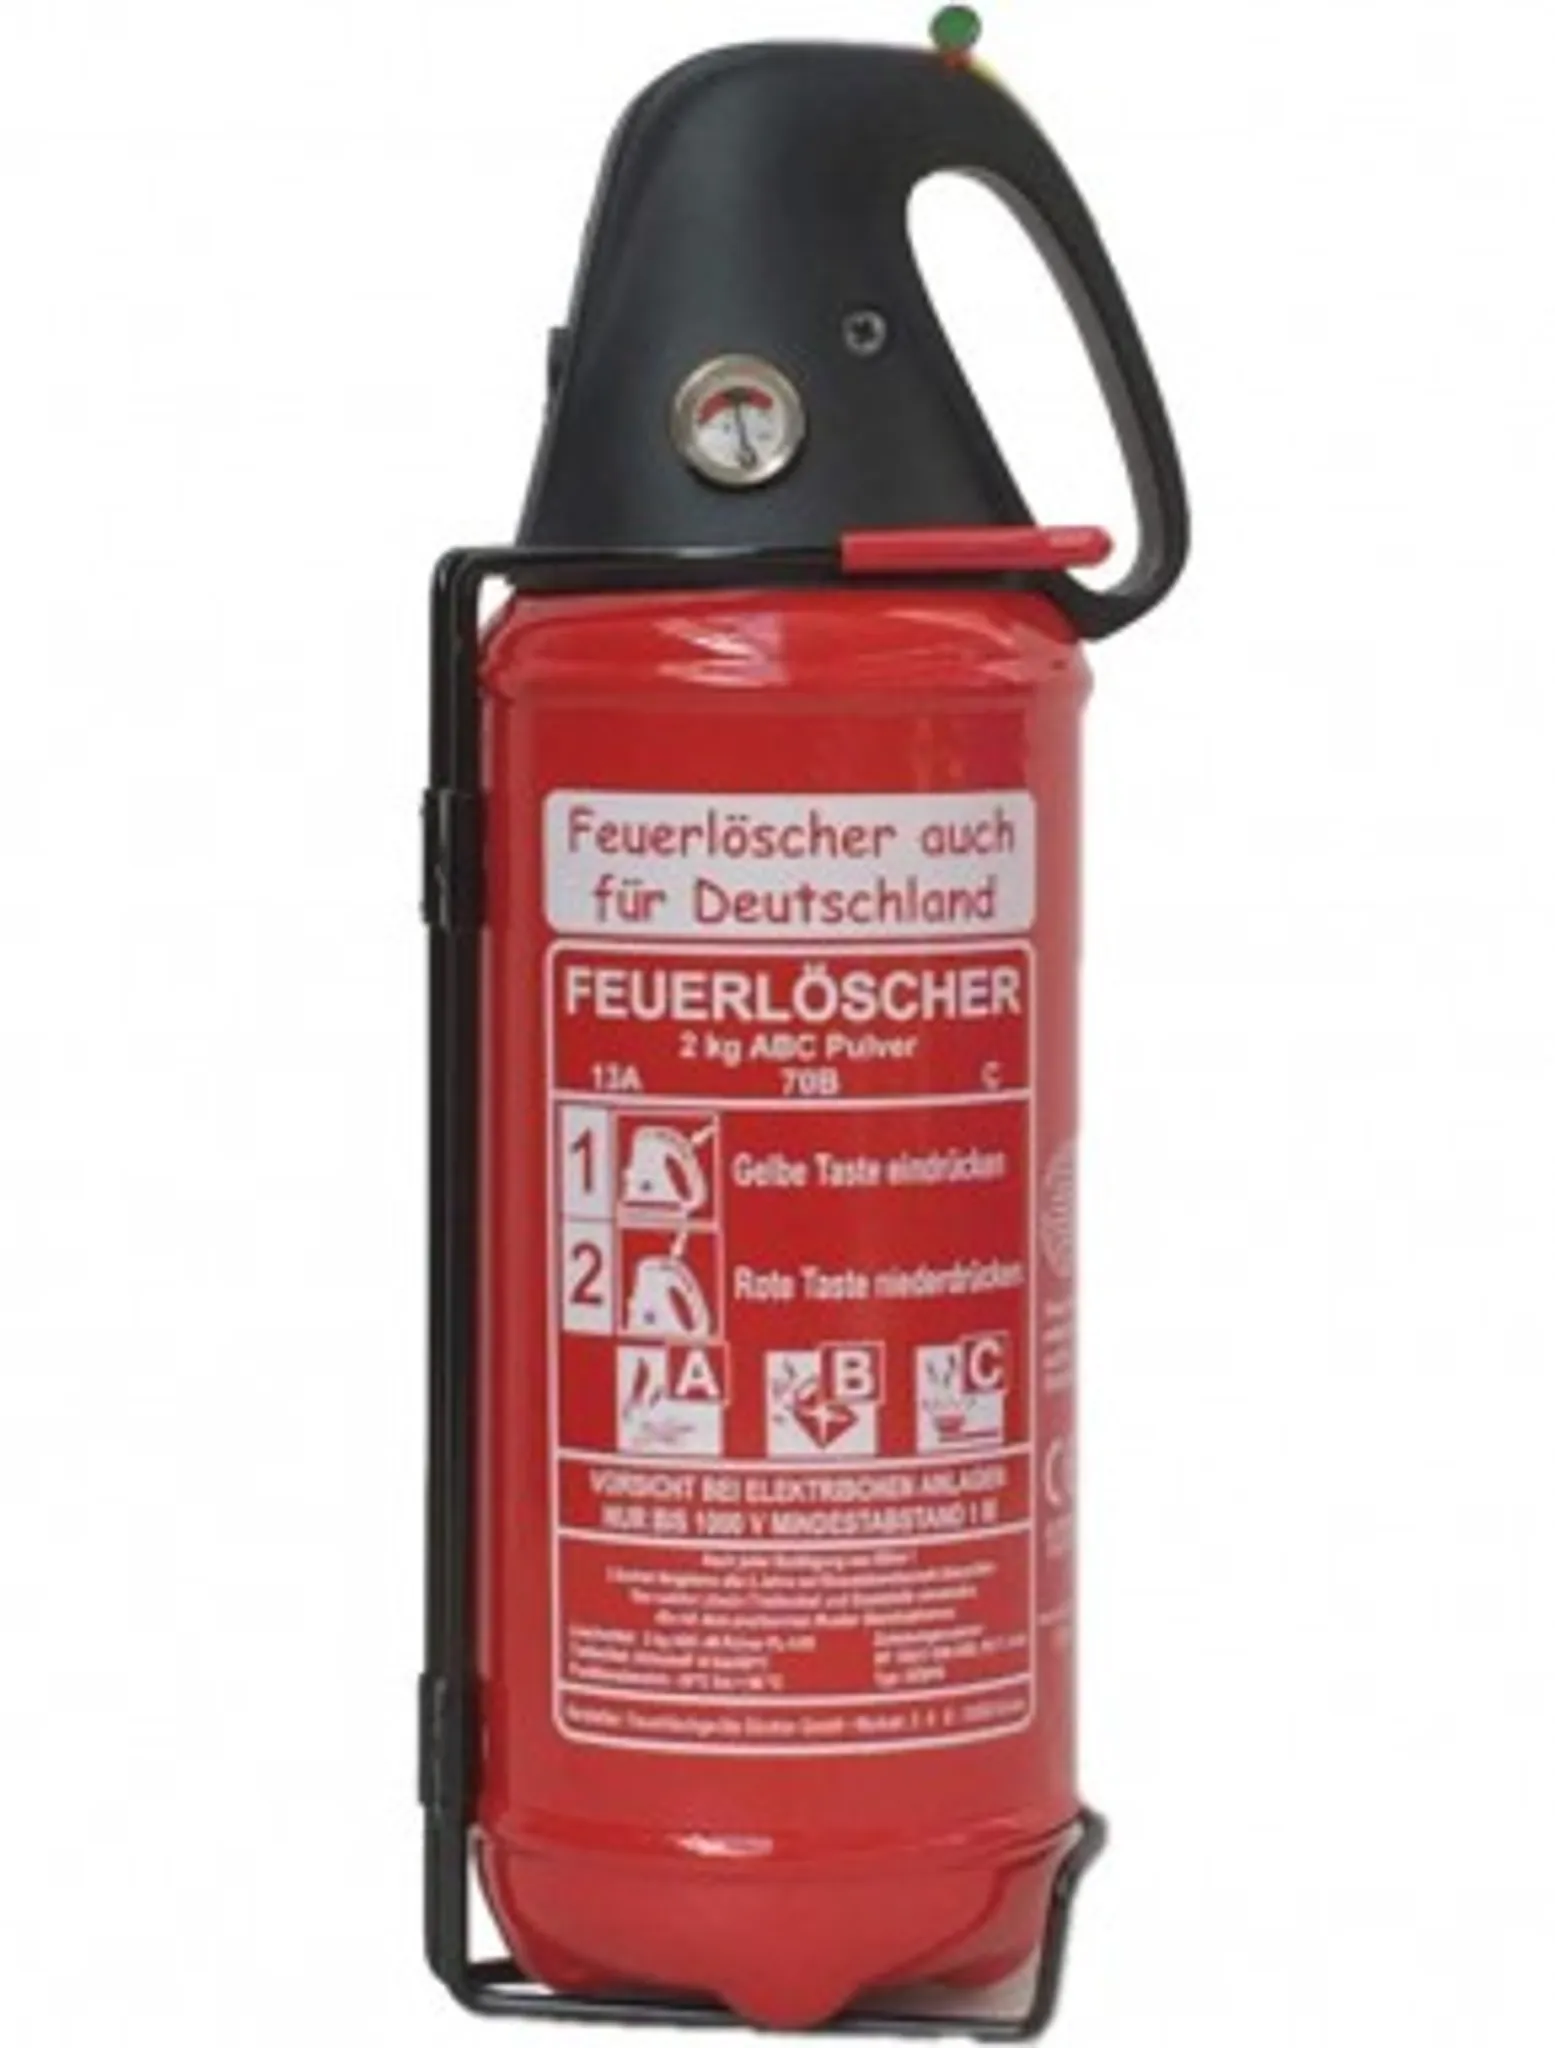 Pulver-Feuerlöscher DIN EN3-7, 1 kg